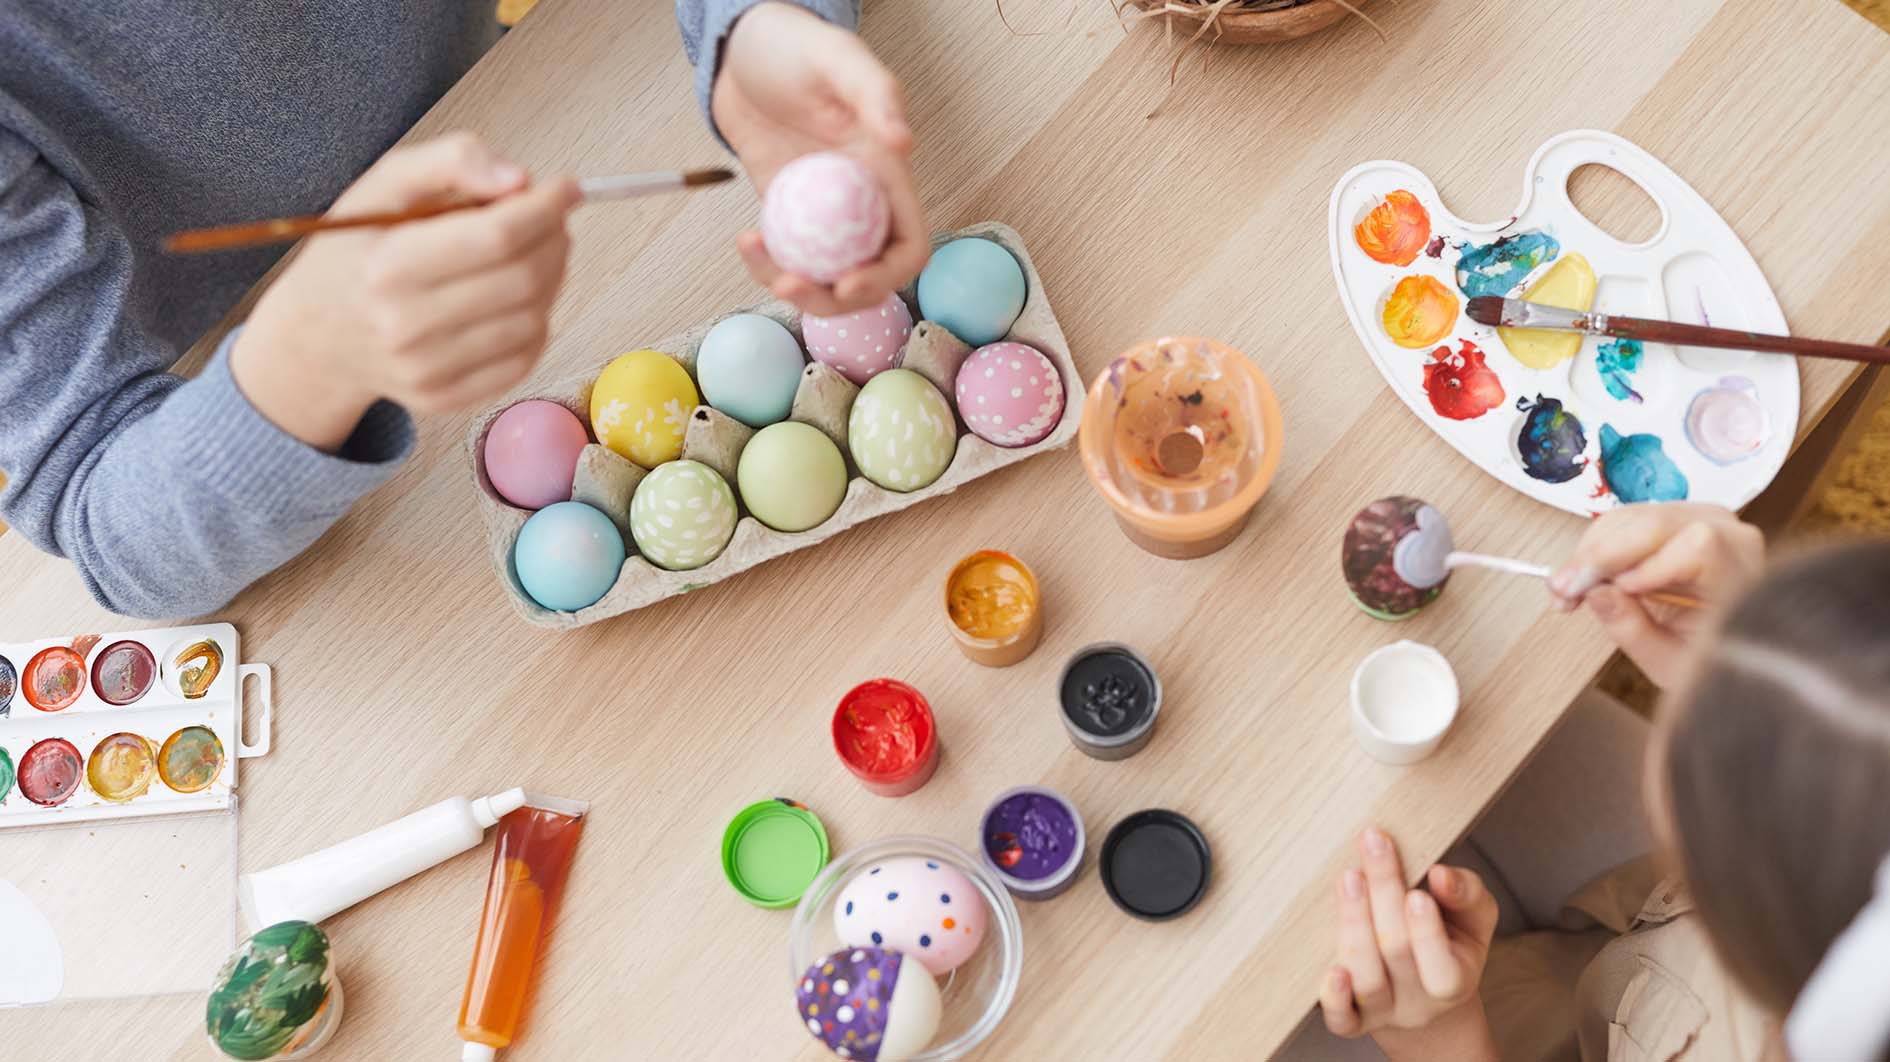 Children paint eggs for Easter